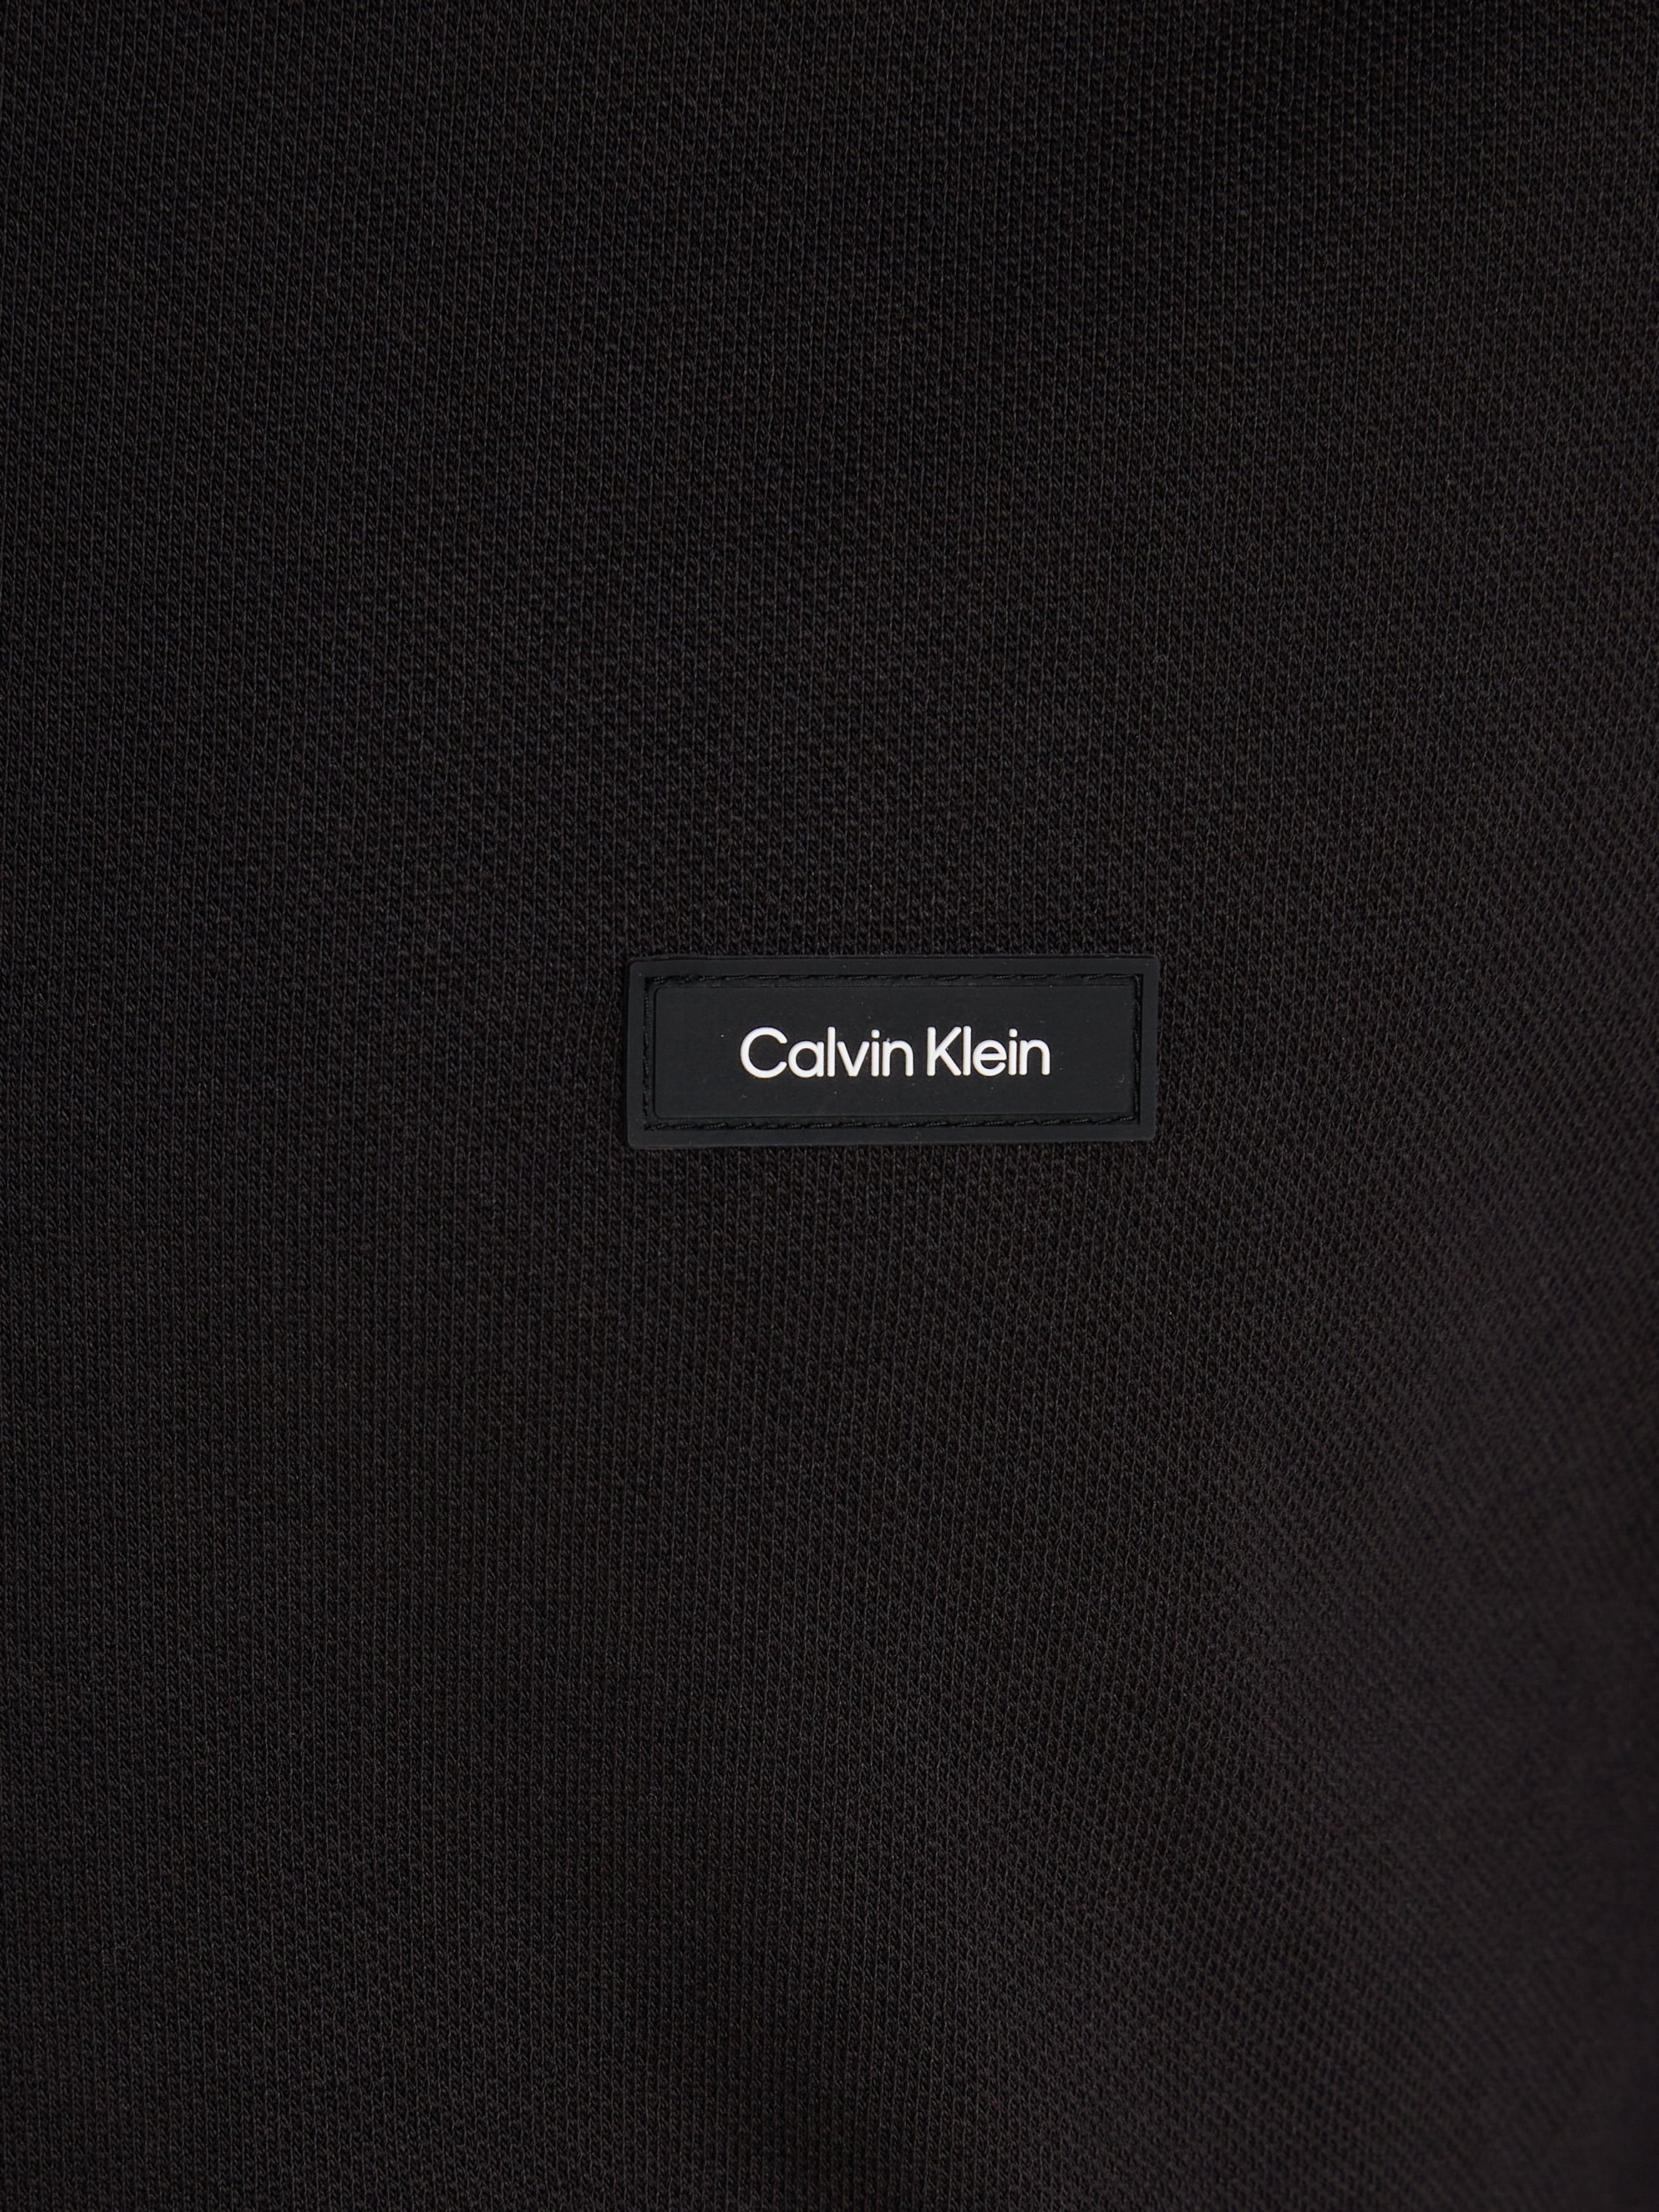 PIQUE LS Klein Black STRETCH POLO Calvin Poloshirt TIPPING Ck